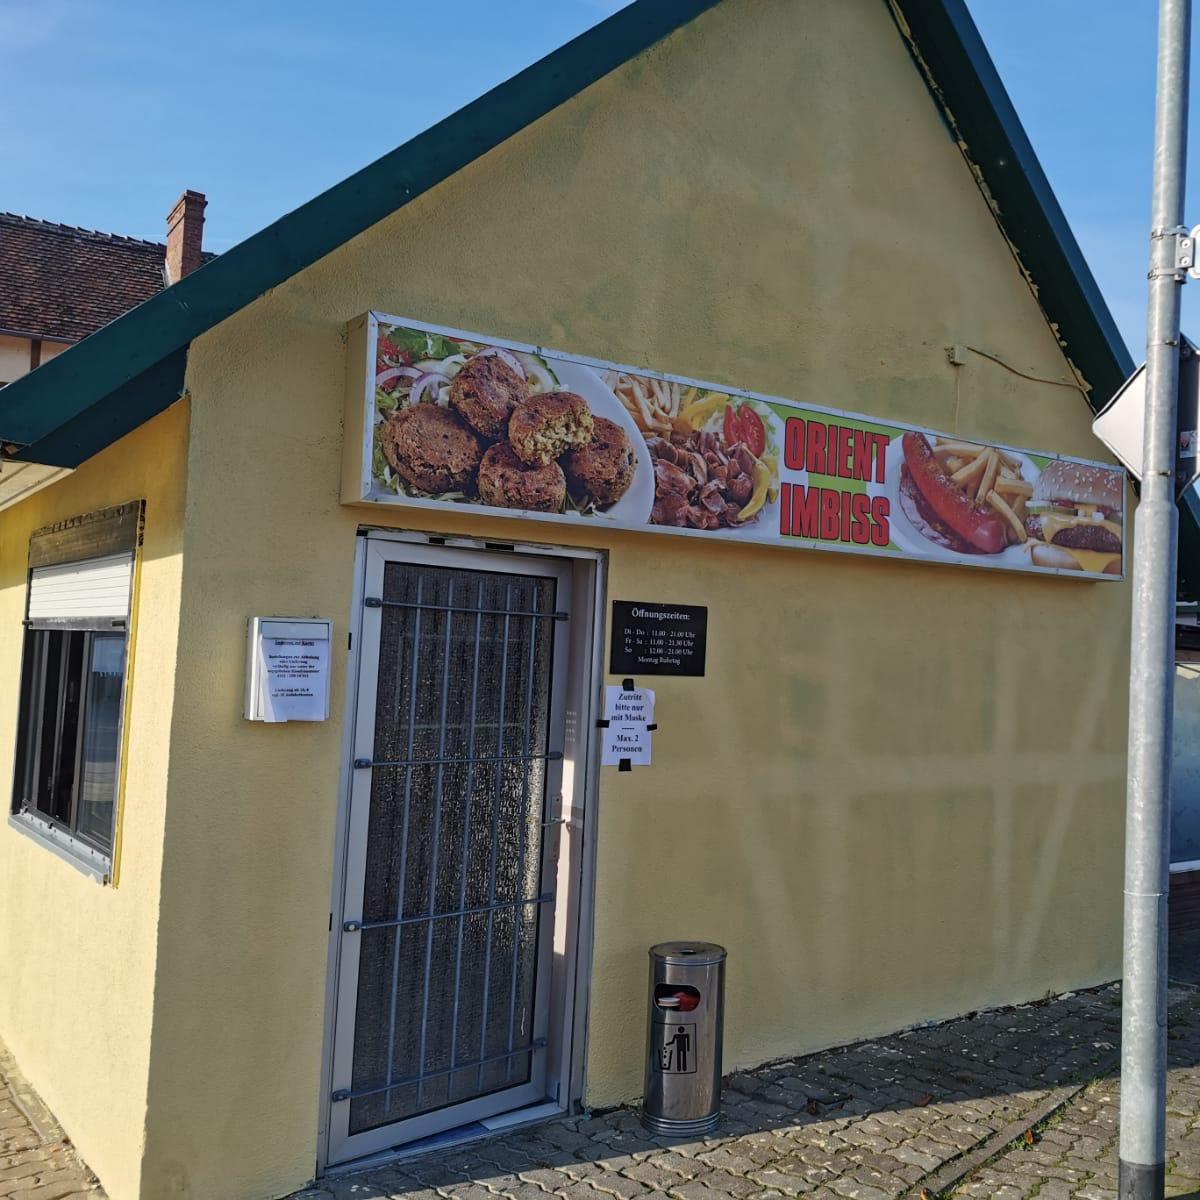 Restaurant "Orient Imbiss" in  Wolfenbüttel